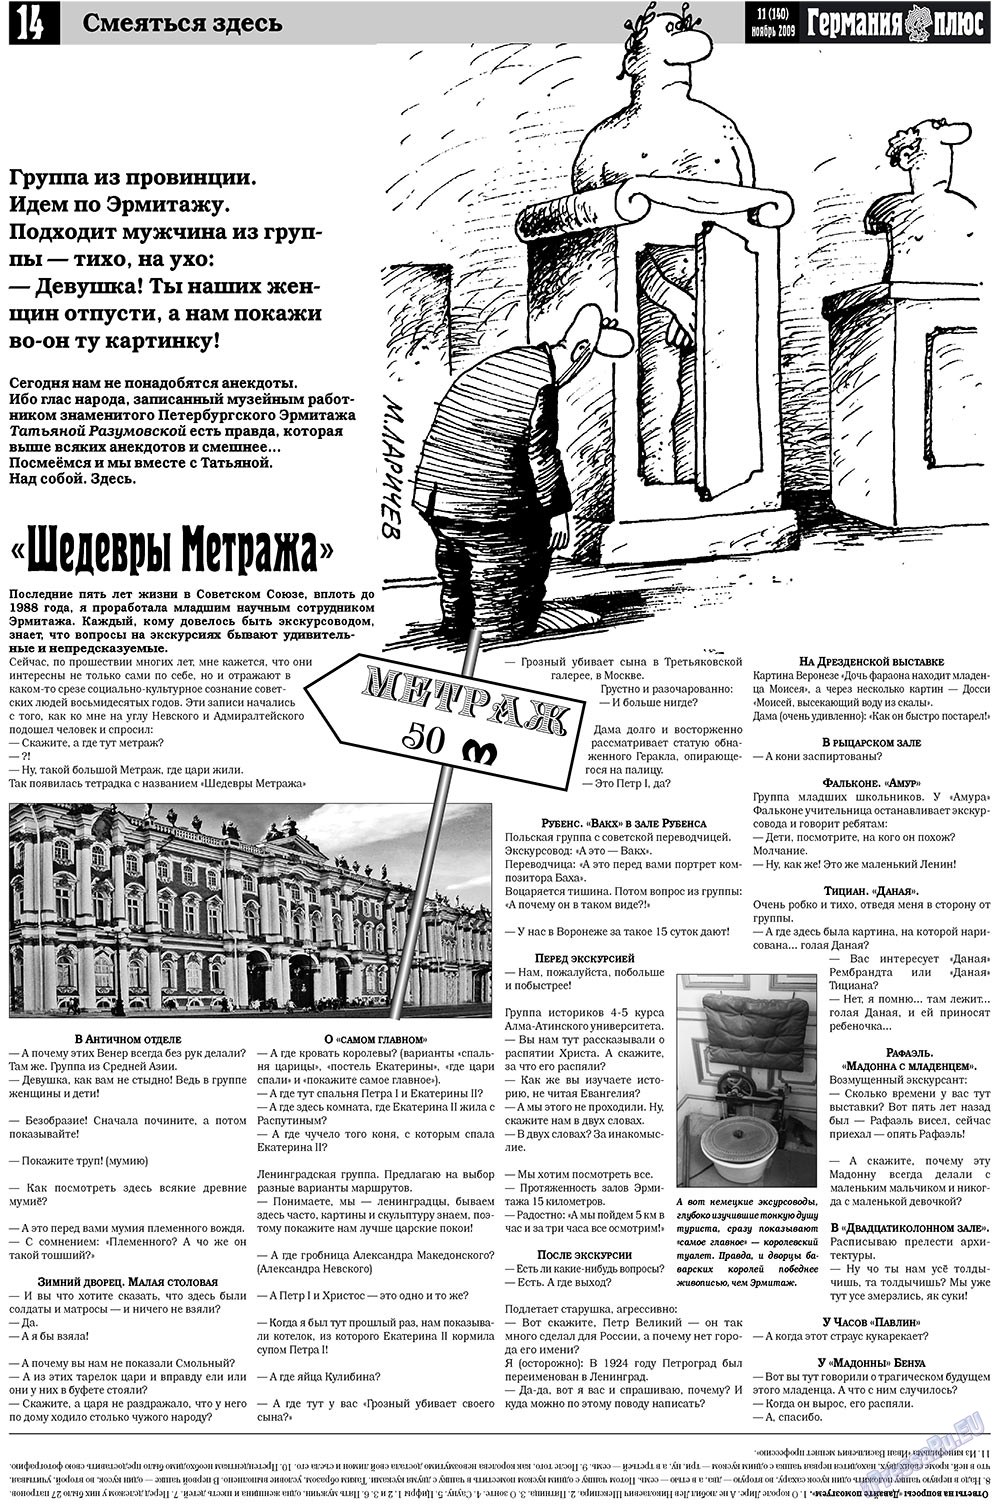 Германия плюс (газета). 2009 год, номер 11, стр. 14